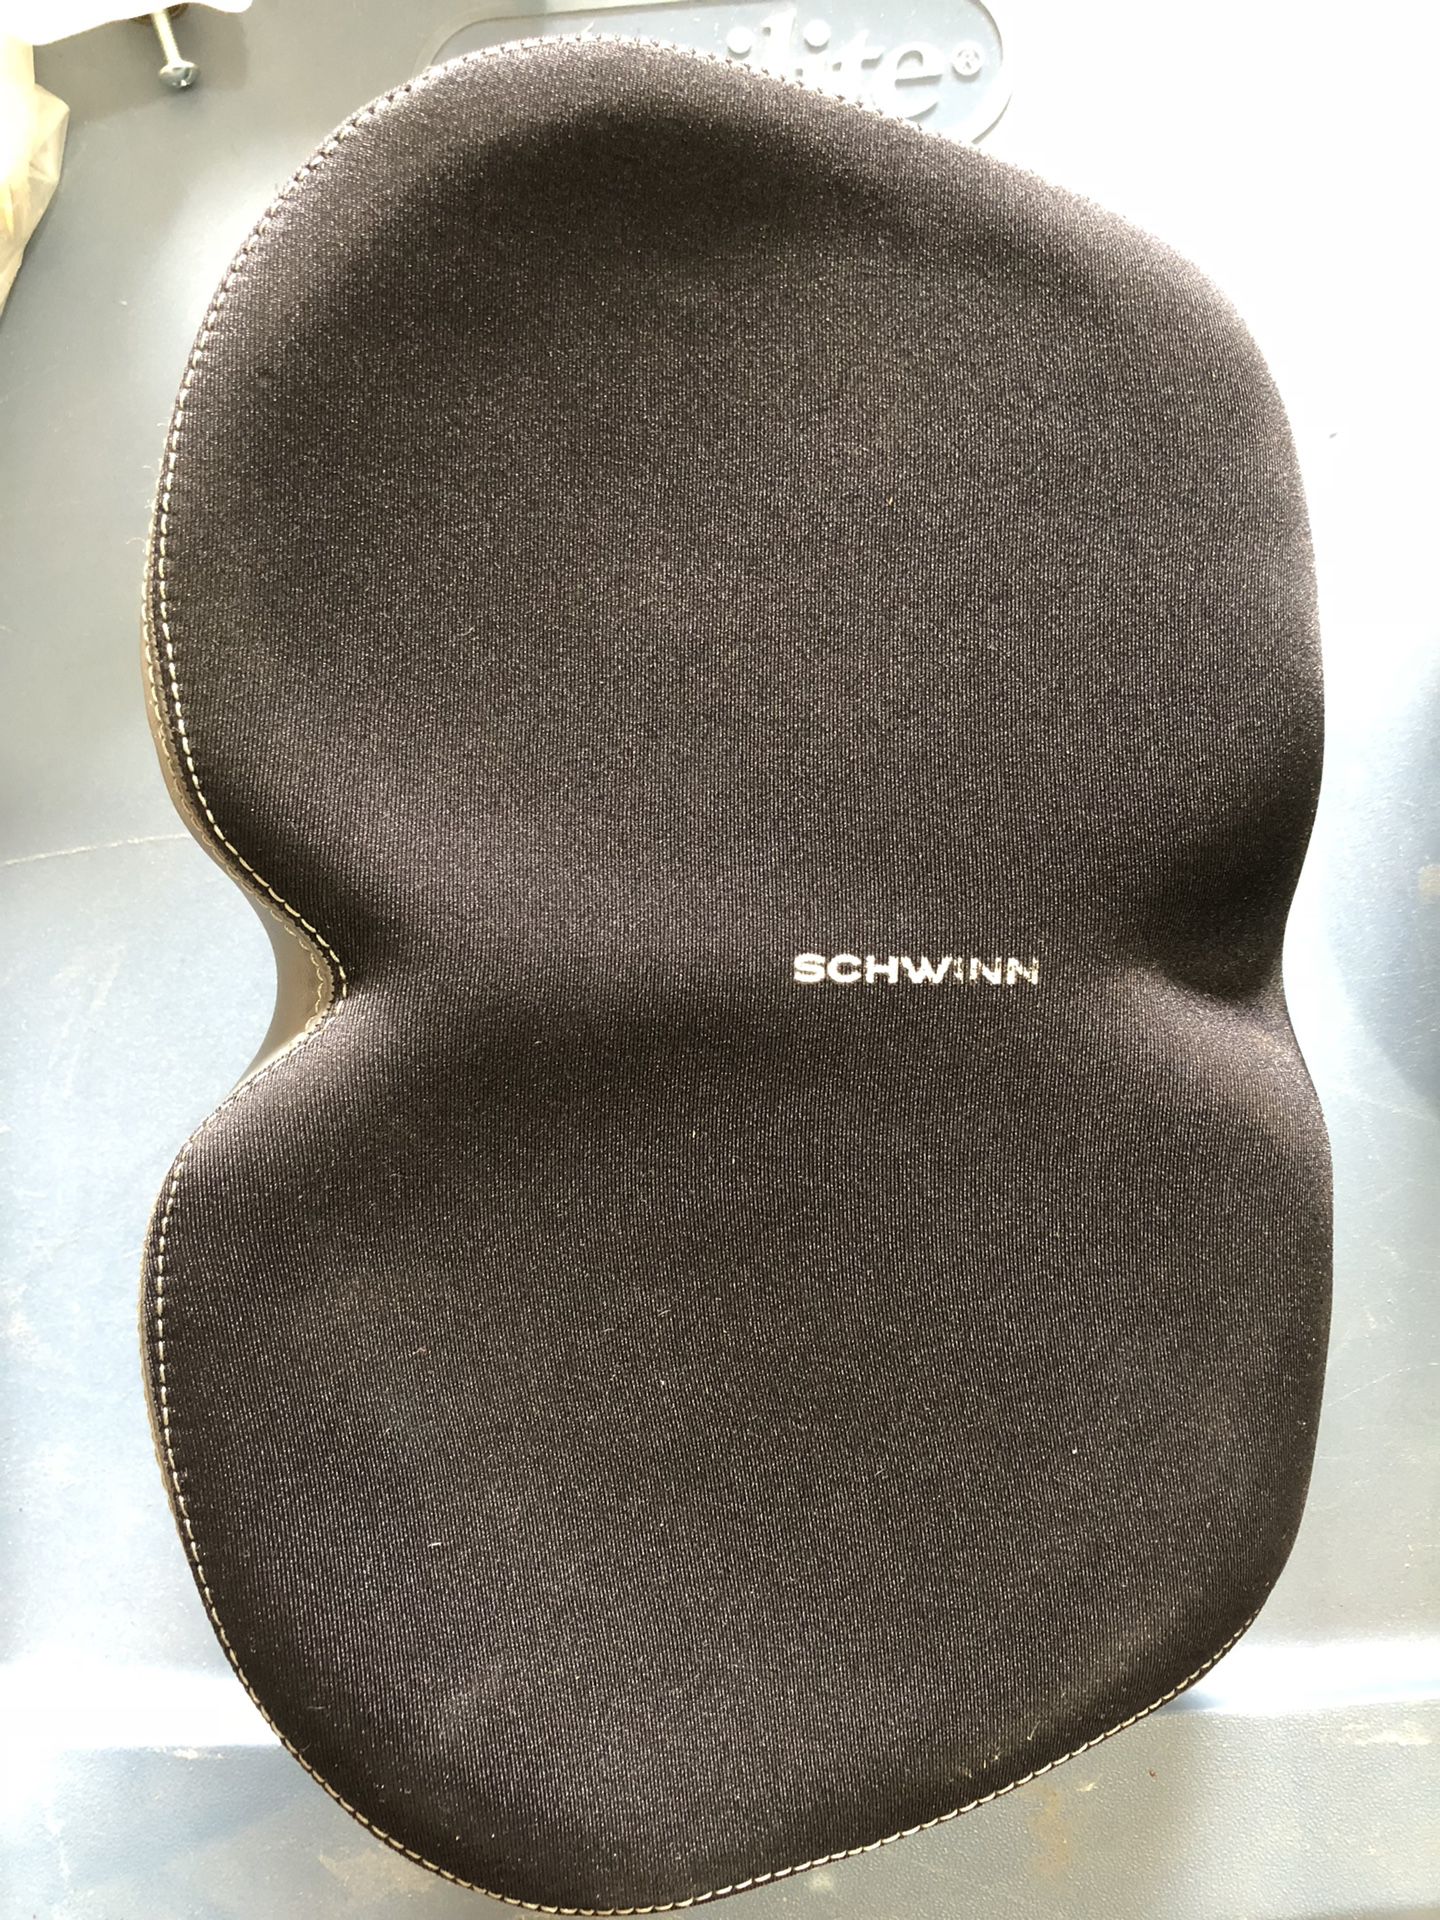 Schwinn Bicycle Seat